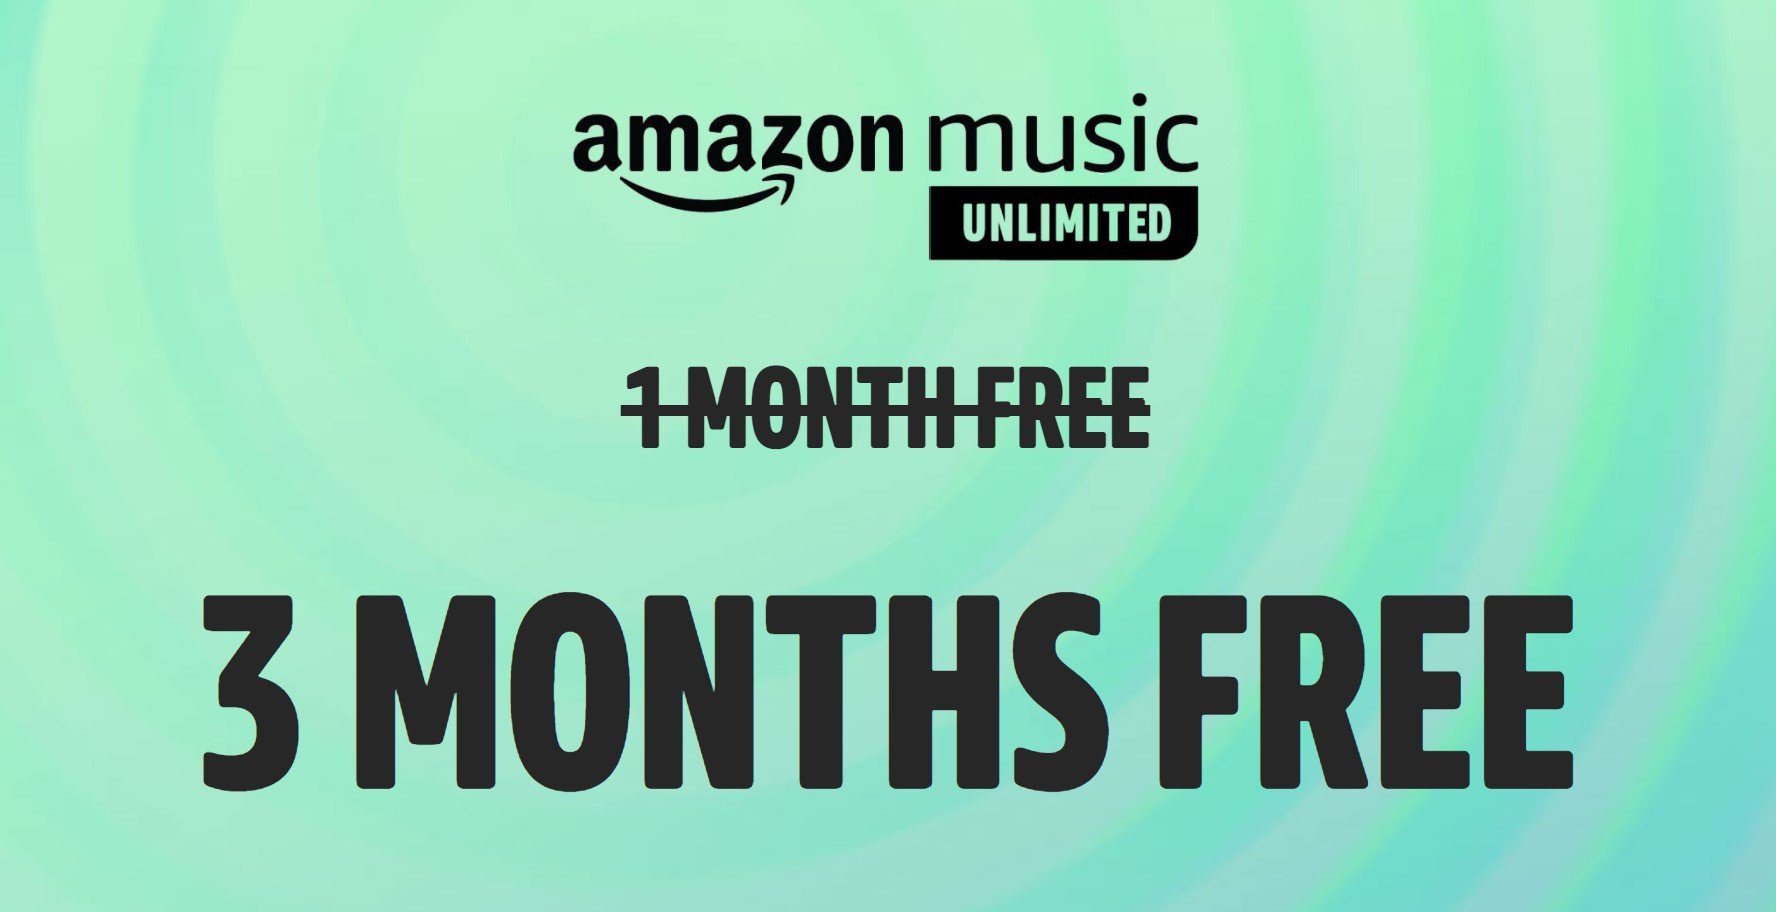 Amazon In Polen ist Music Unlimited in HD-Qualität gestartet. Zum Start - 3 Monate kostenloser Service! 34